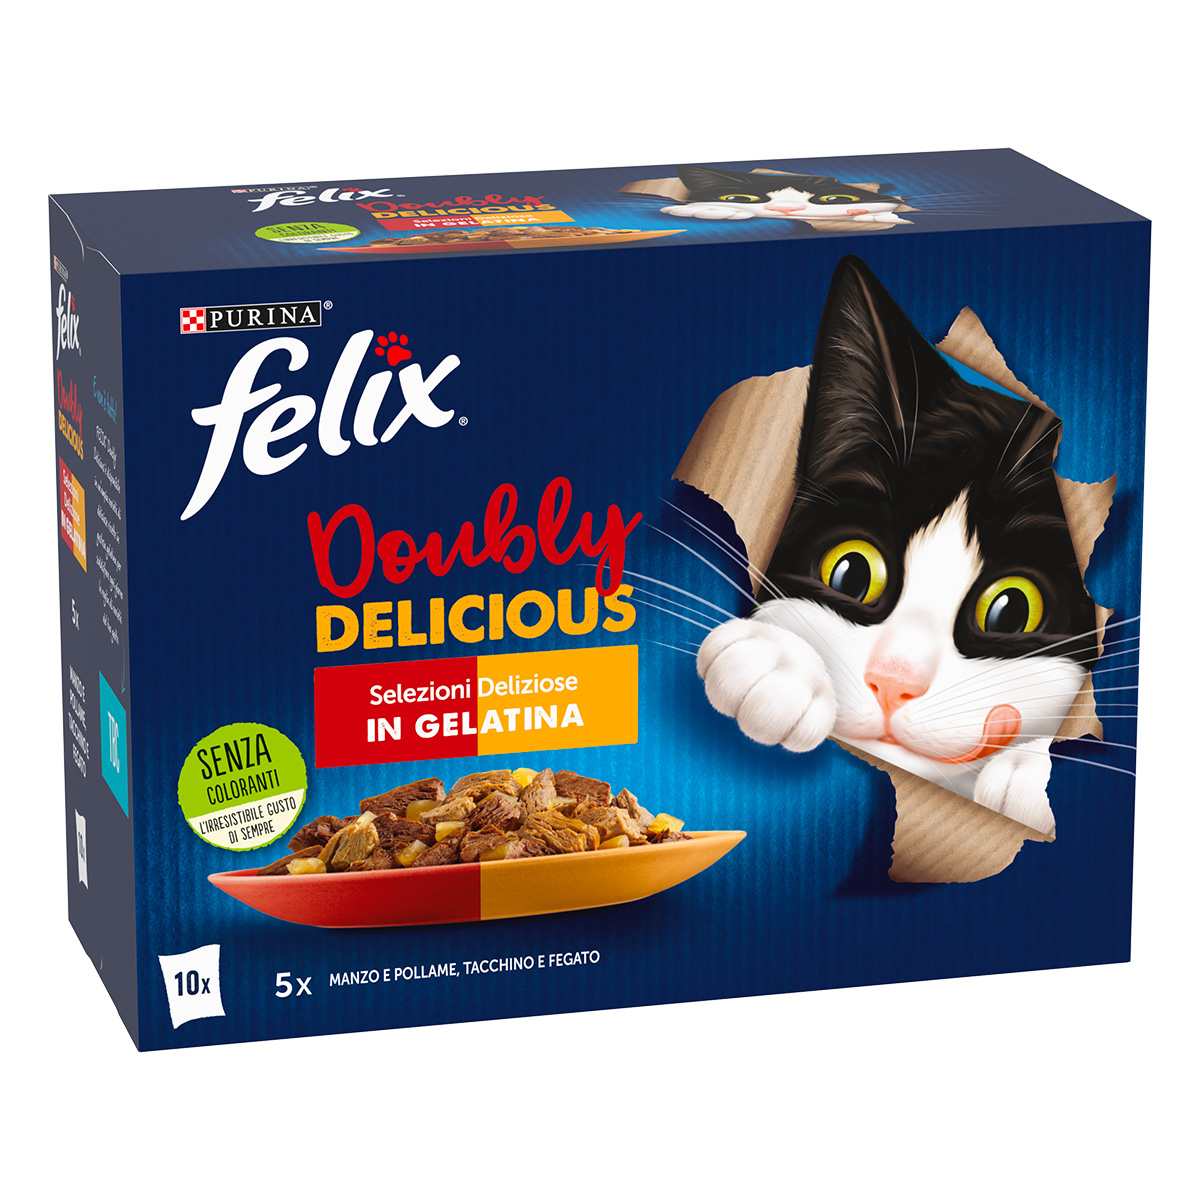 Felix Doubly Delicious Selezioni Deliziose